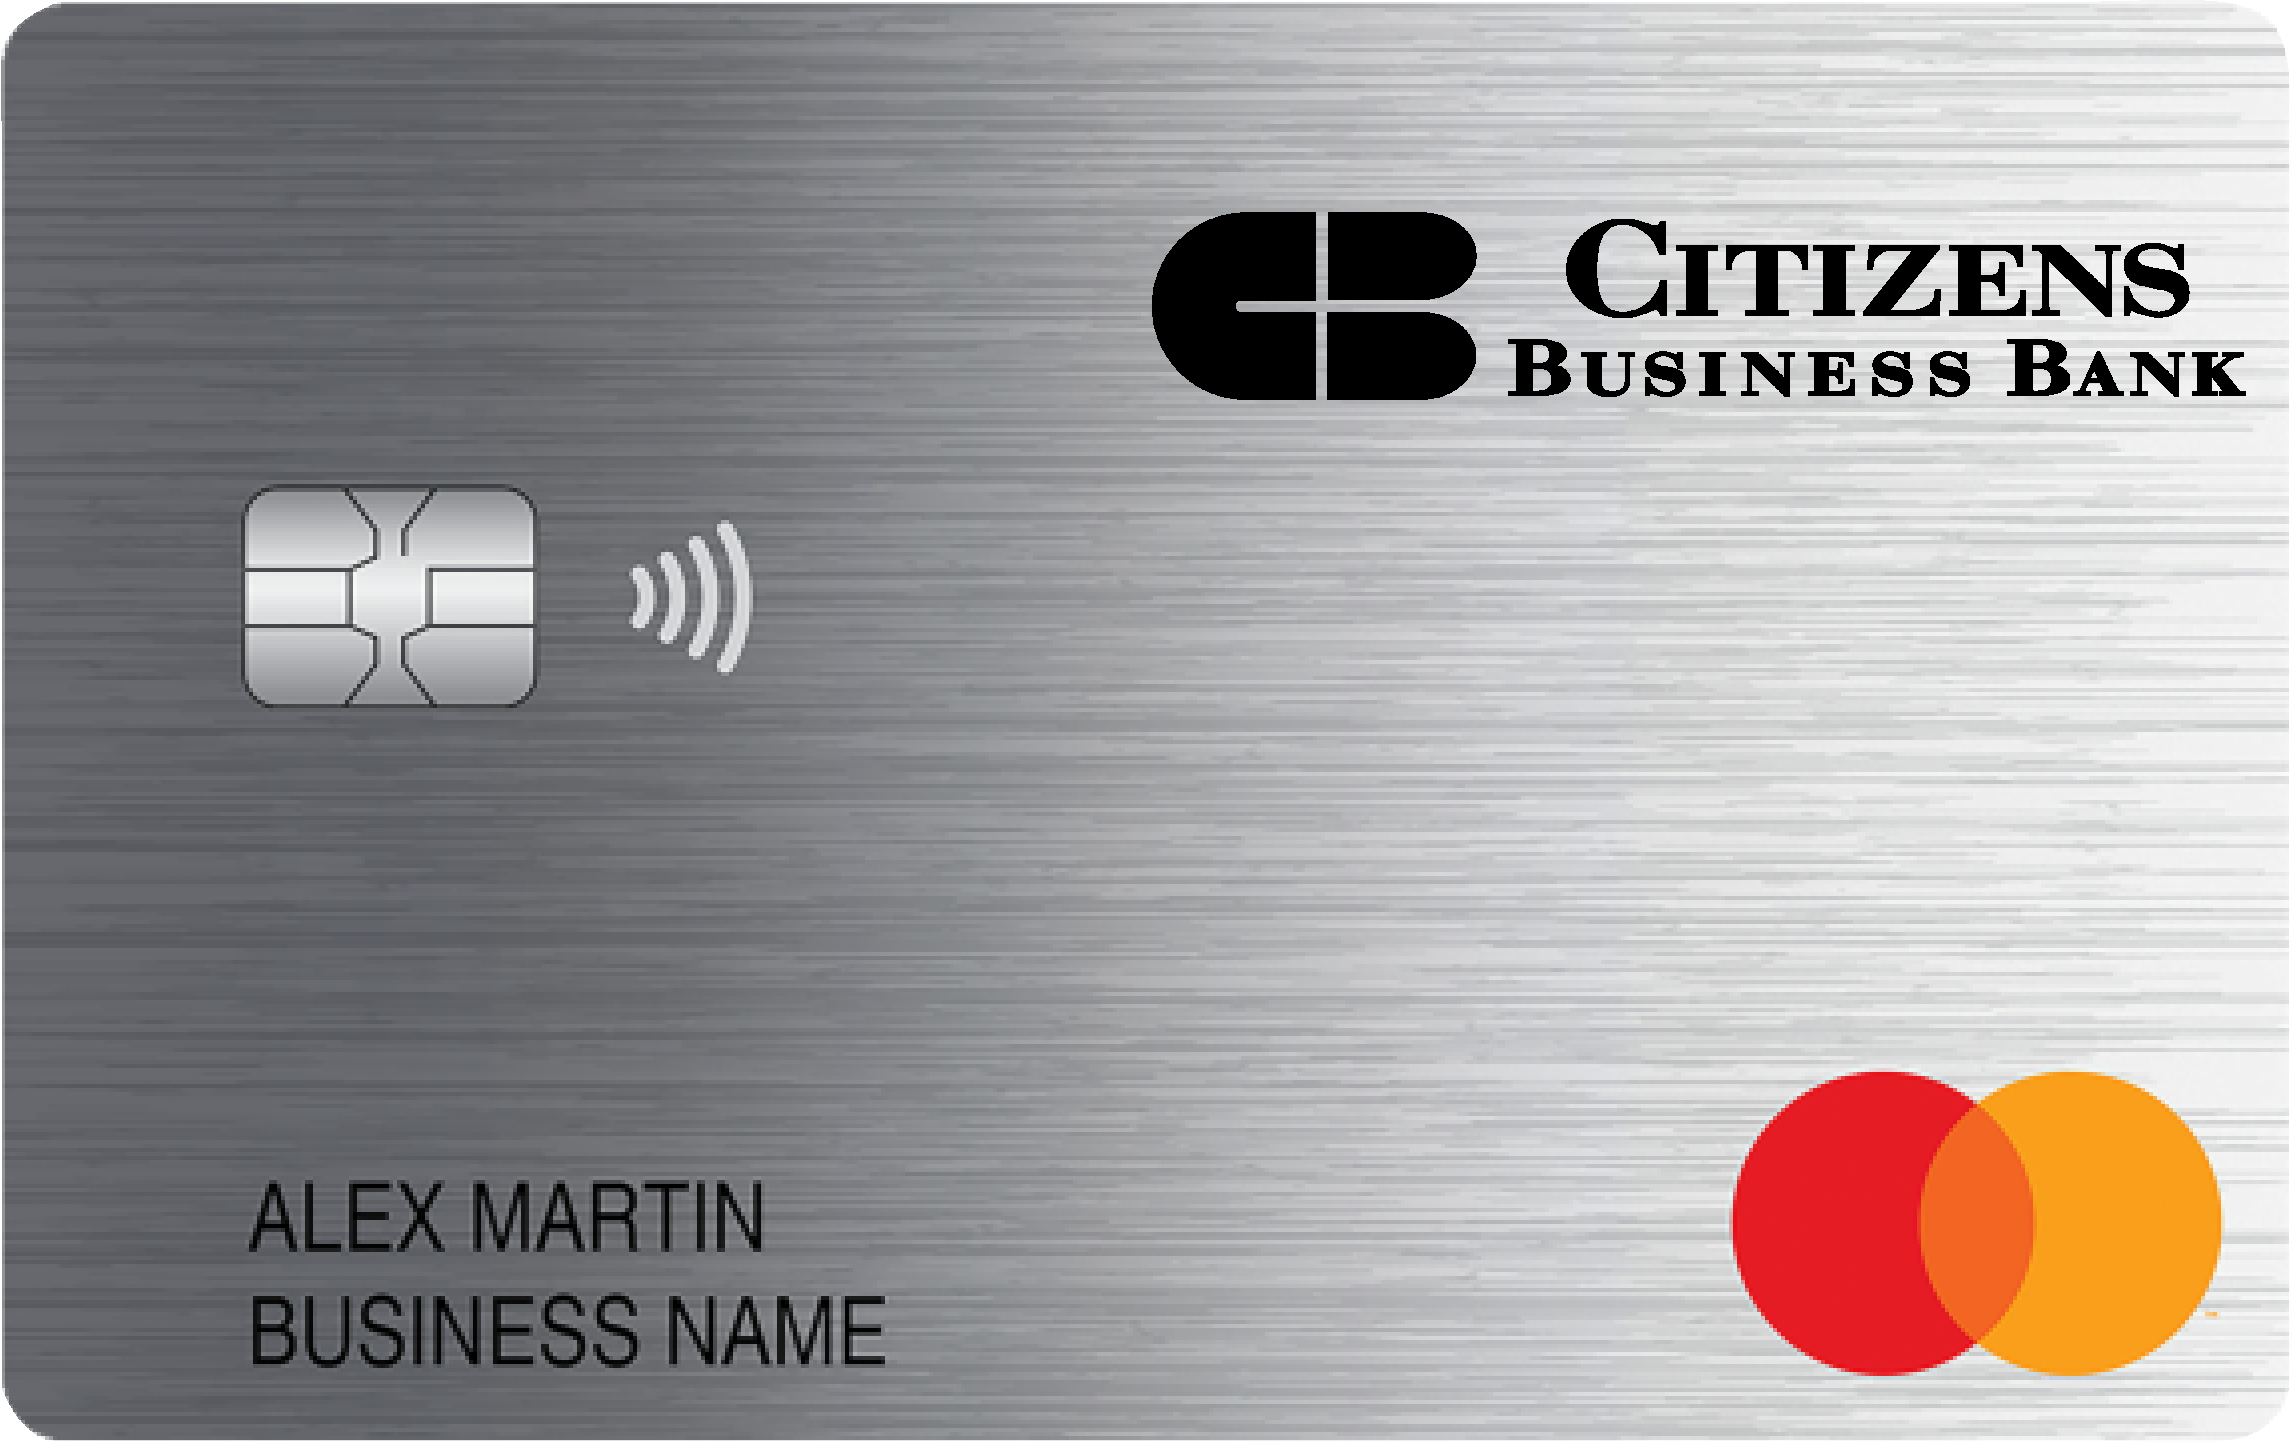 Citizens Business Bank Smart Business Rewards Card